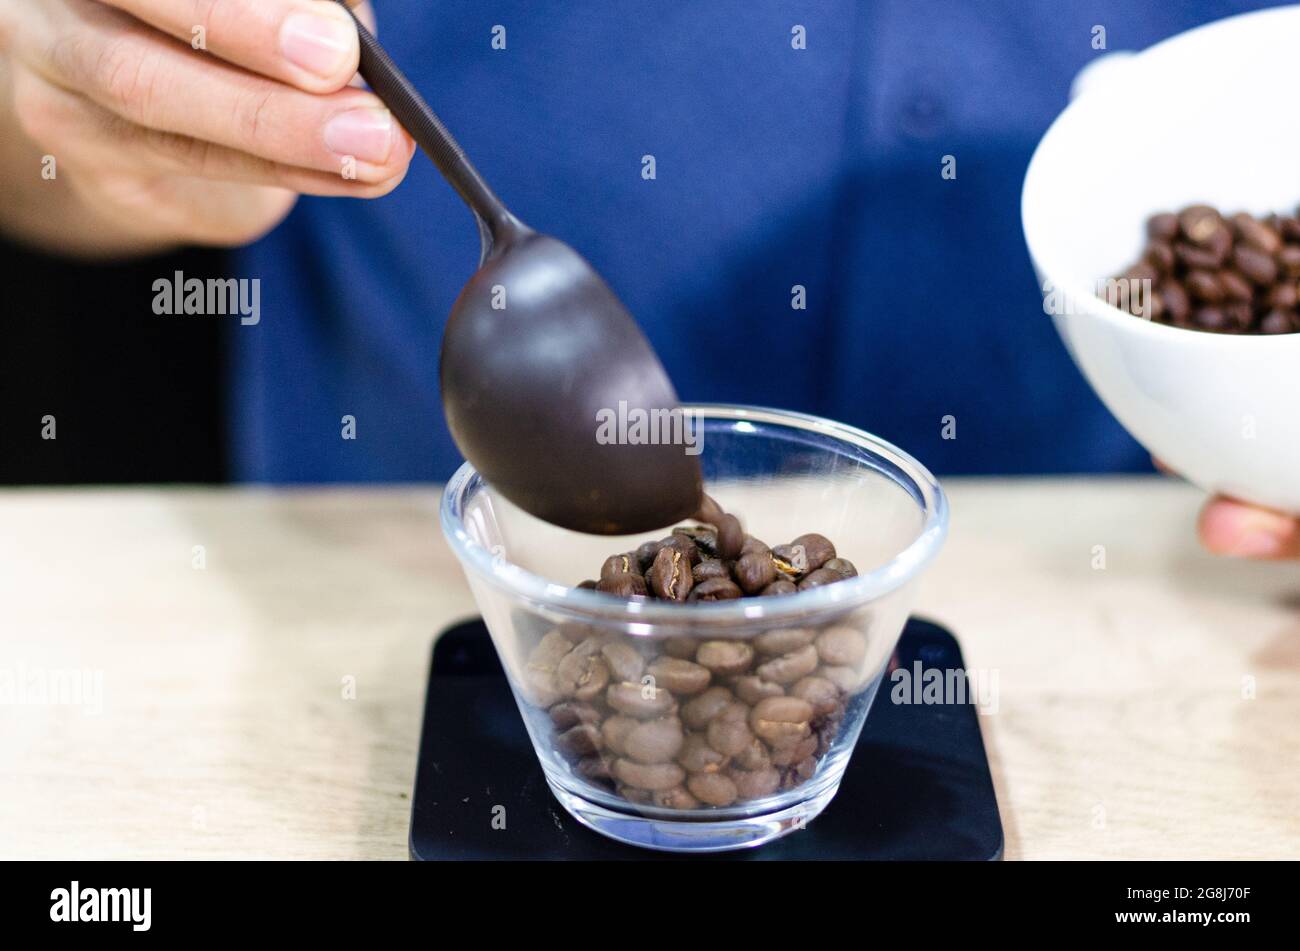 Pesée des grains de café sur une balance numérique. Mains du barista masculin versant les grains de café torréfiés sur une balance avant de préparer le café. Banque D'Images